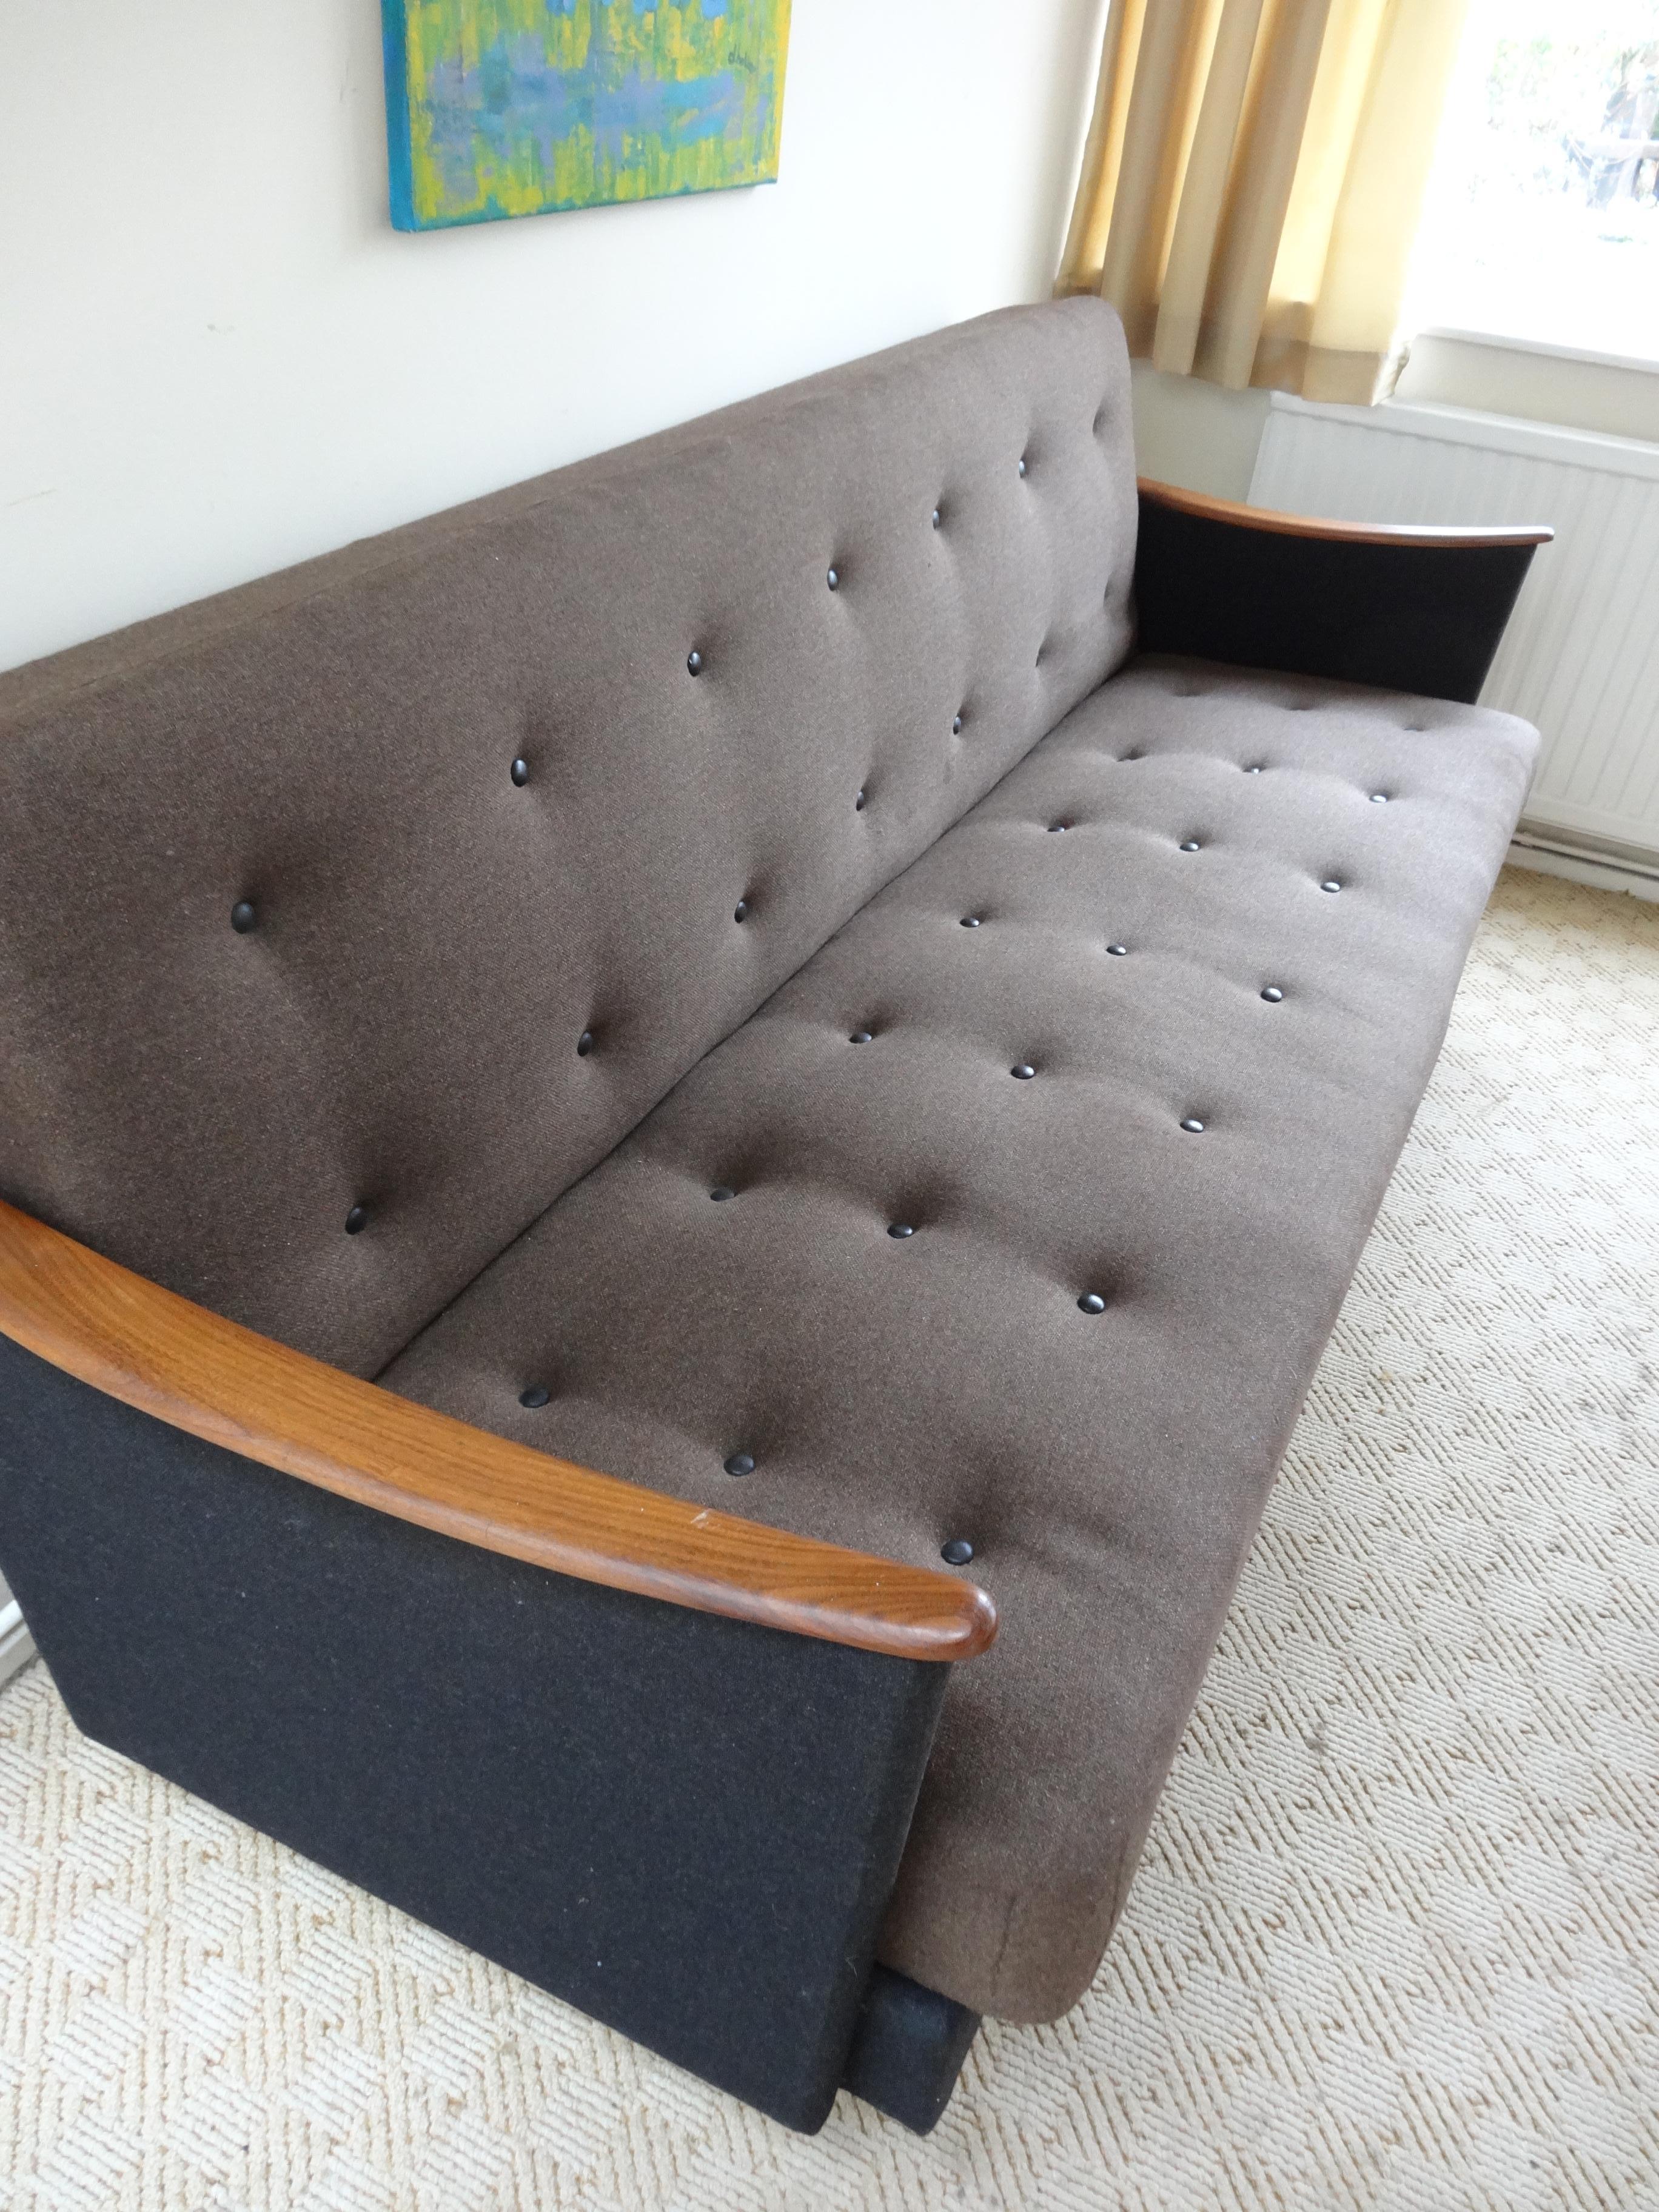 Dänisches 3-Sitzer-Sofa oder Daybed aus den 1950er Jahren

Schöne 1950er Jahre Teil Holzrahmensofa in sehr gutem Zustand, es hat Decke Lagerung unter und faltet sich in eine sehr nützliche Liege

Maße: Sofa - Sitzhöhe 43cm, Höhe 82cm, Tiefe 85 /